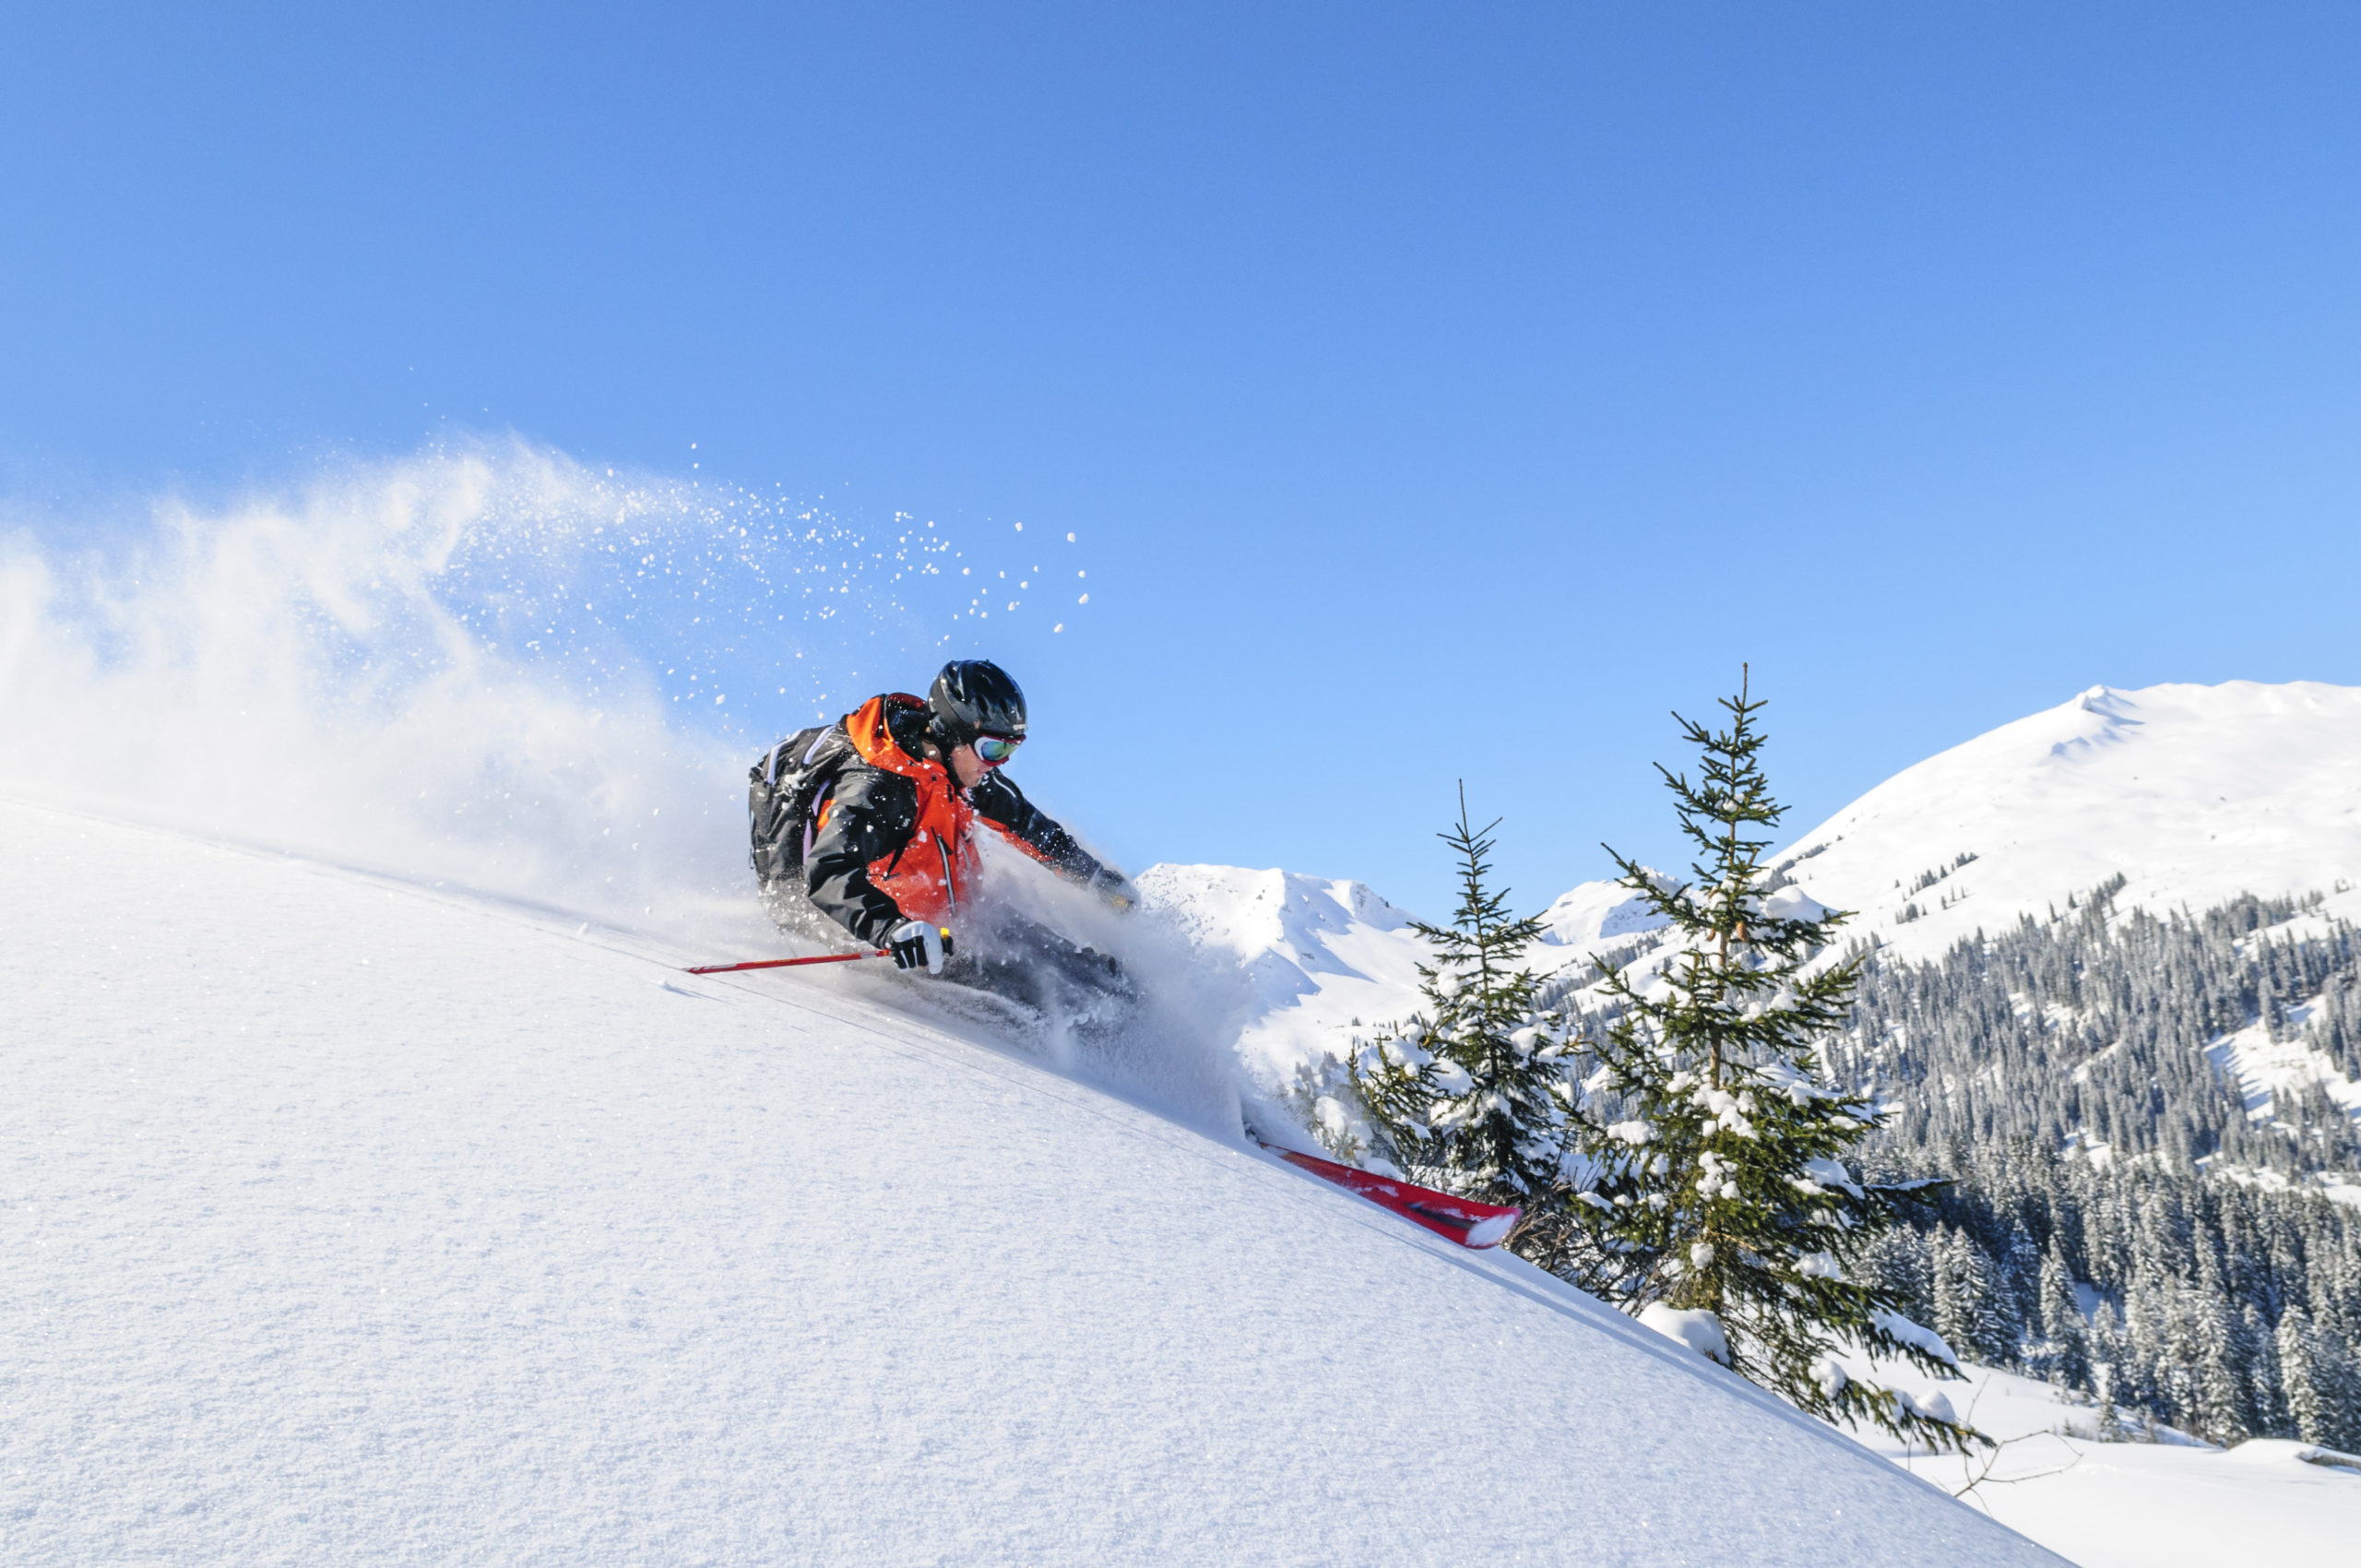 IKON Ski Pass info for 20/21 season